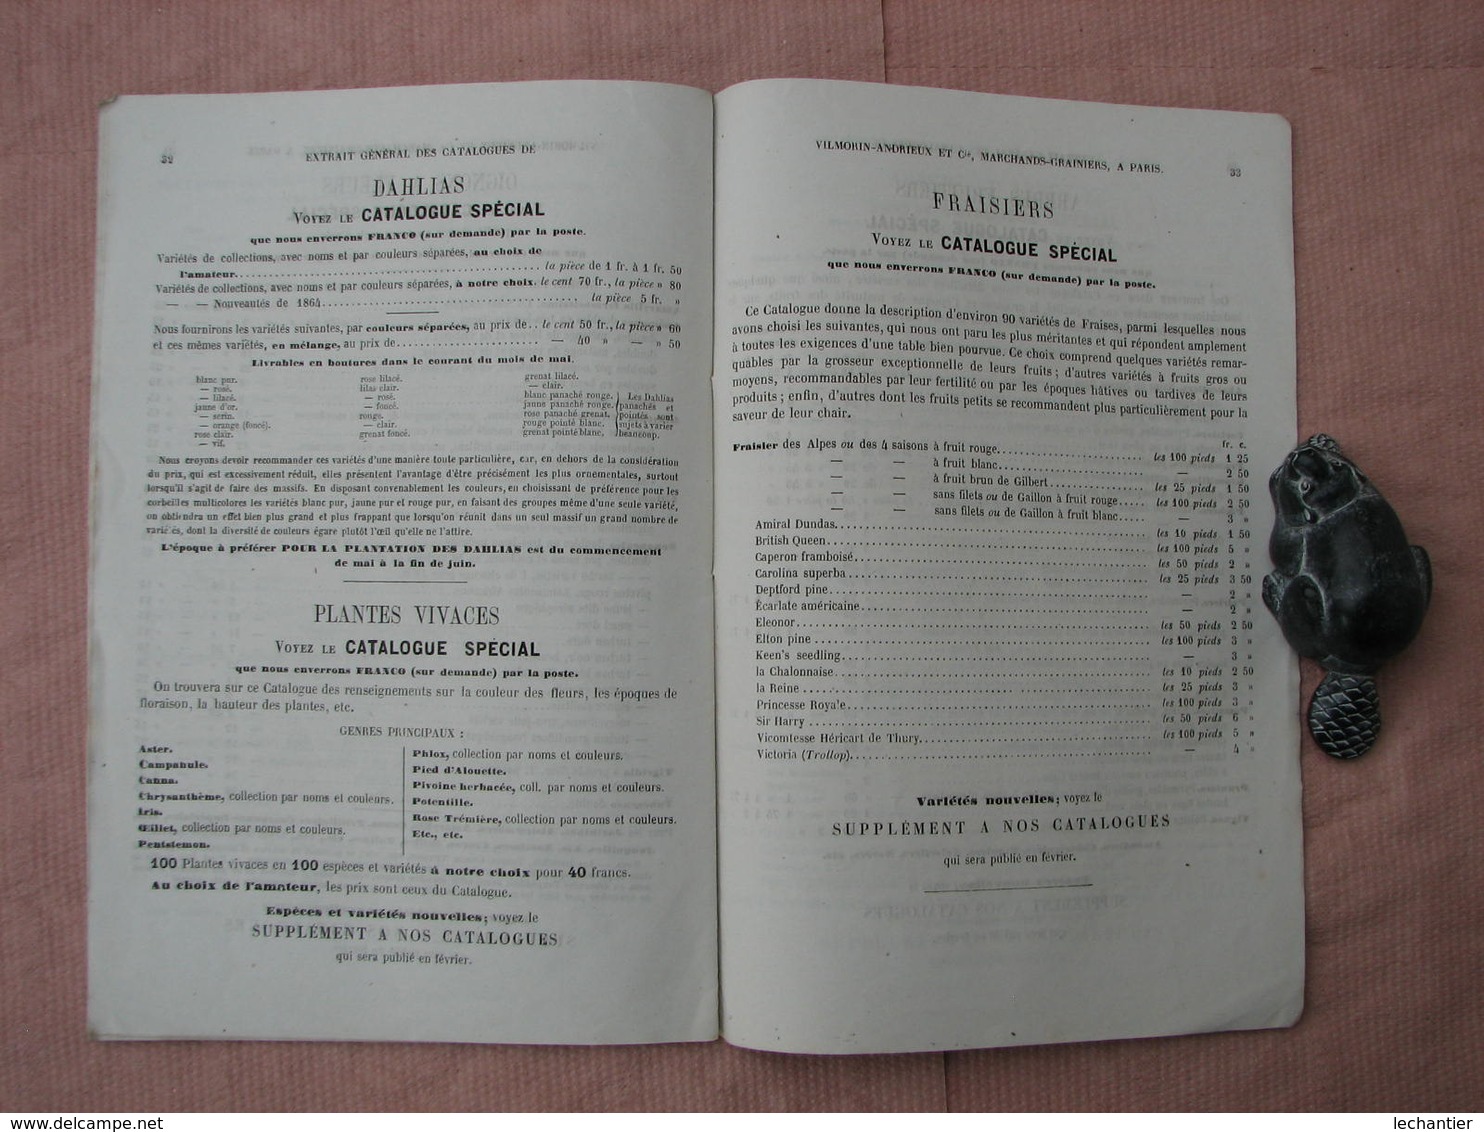 VILMORIN ANDRIEU 1865 Extrait Catalogue 36 pages 155X235 Graines, Plantes Vivaces, Graines d'Arbres  T.B.E.